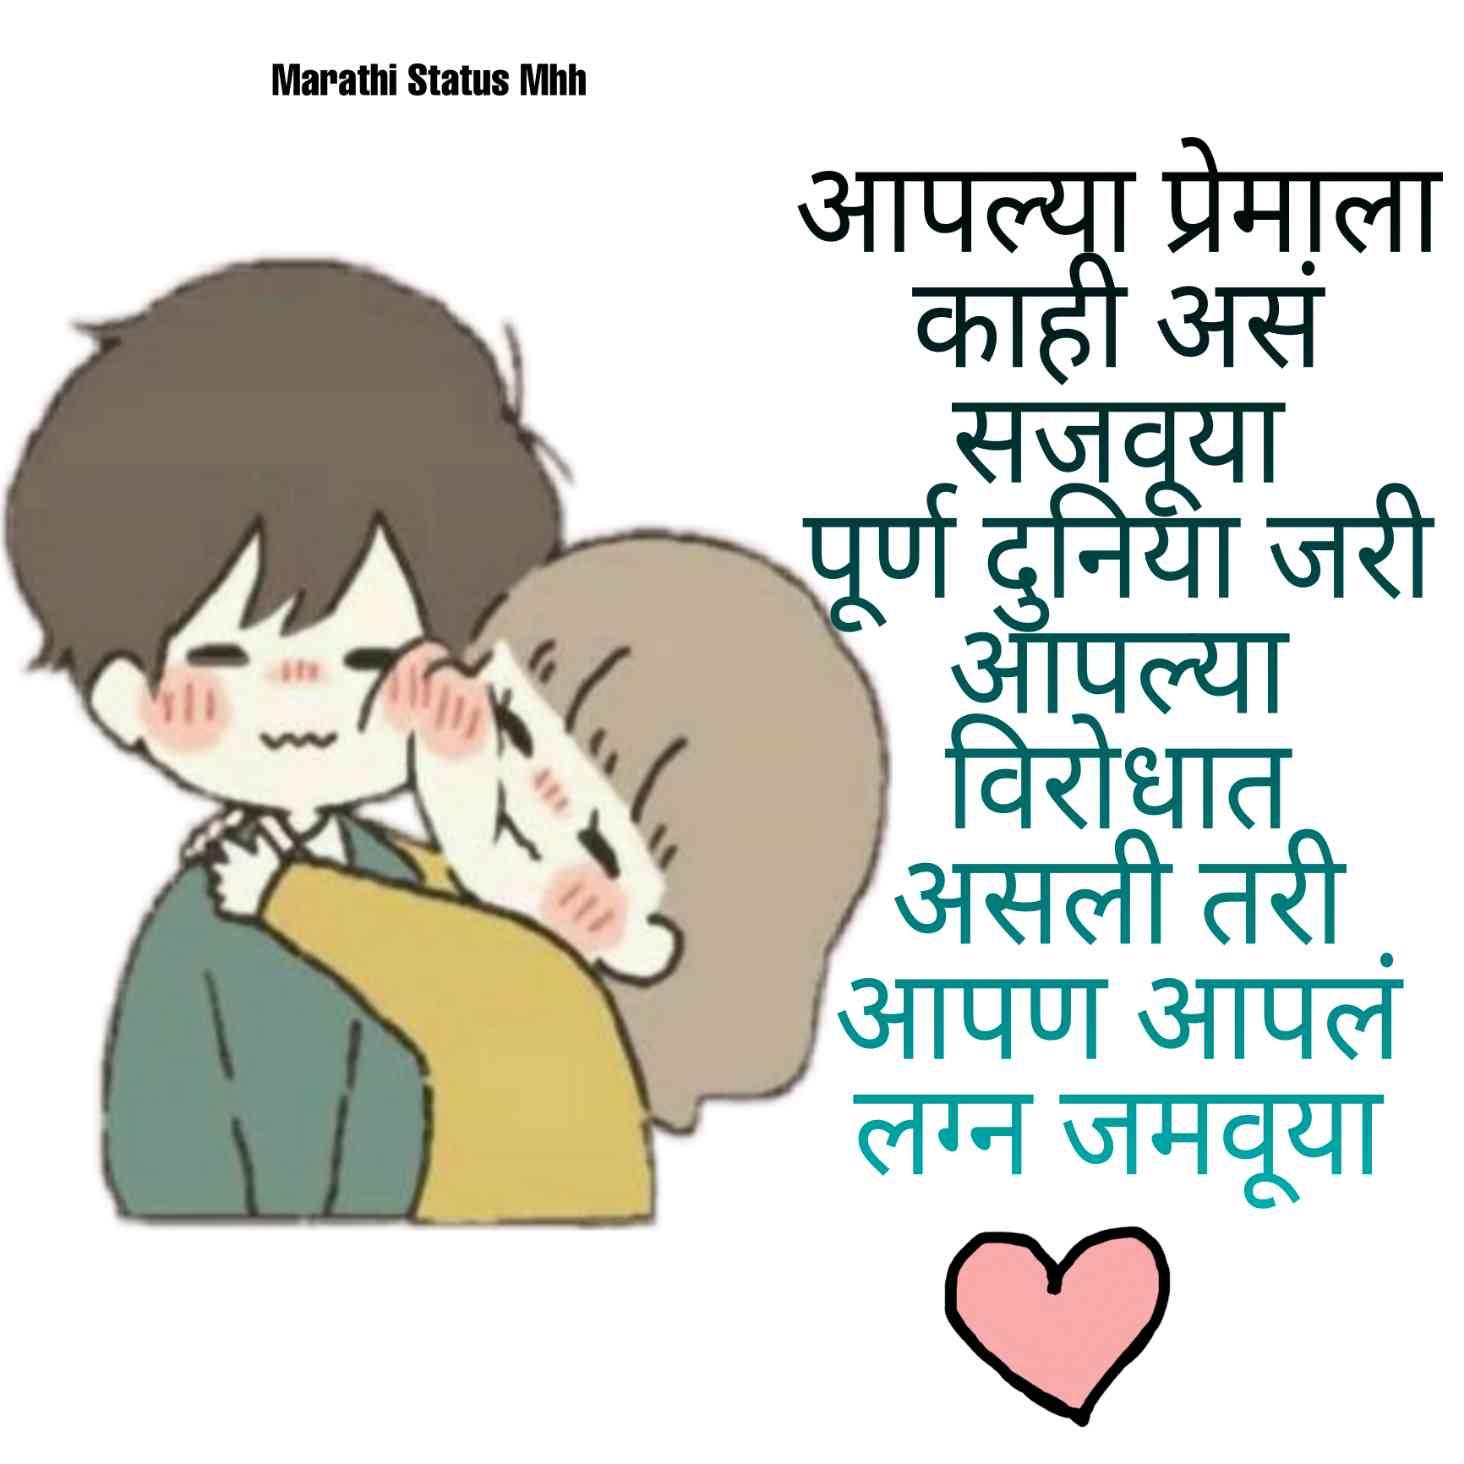 True Love Quotes Marathi